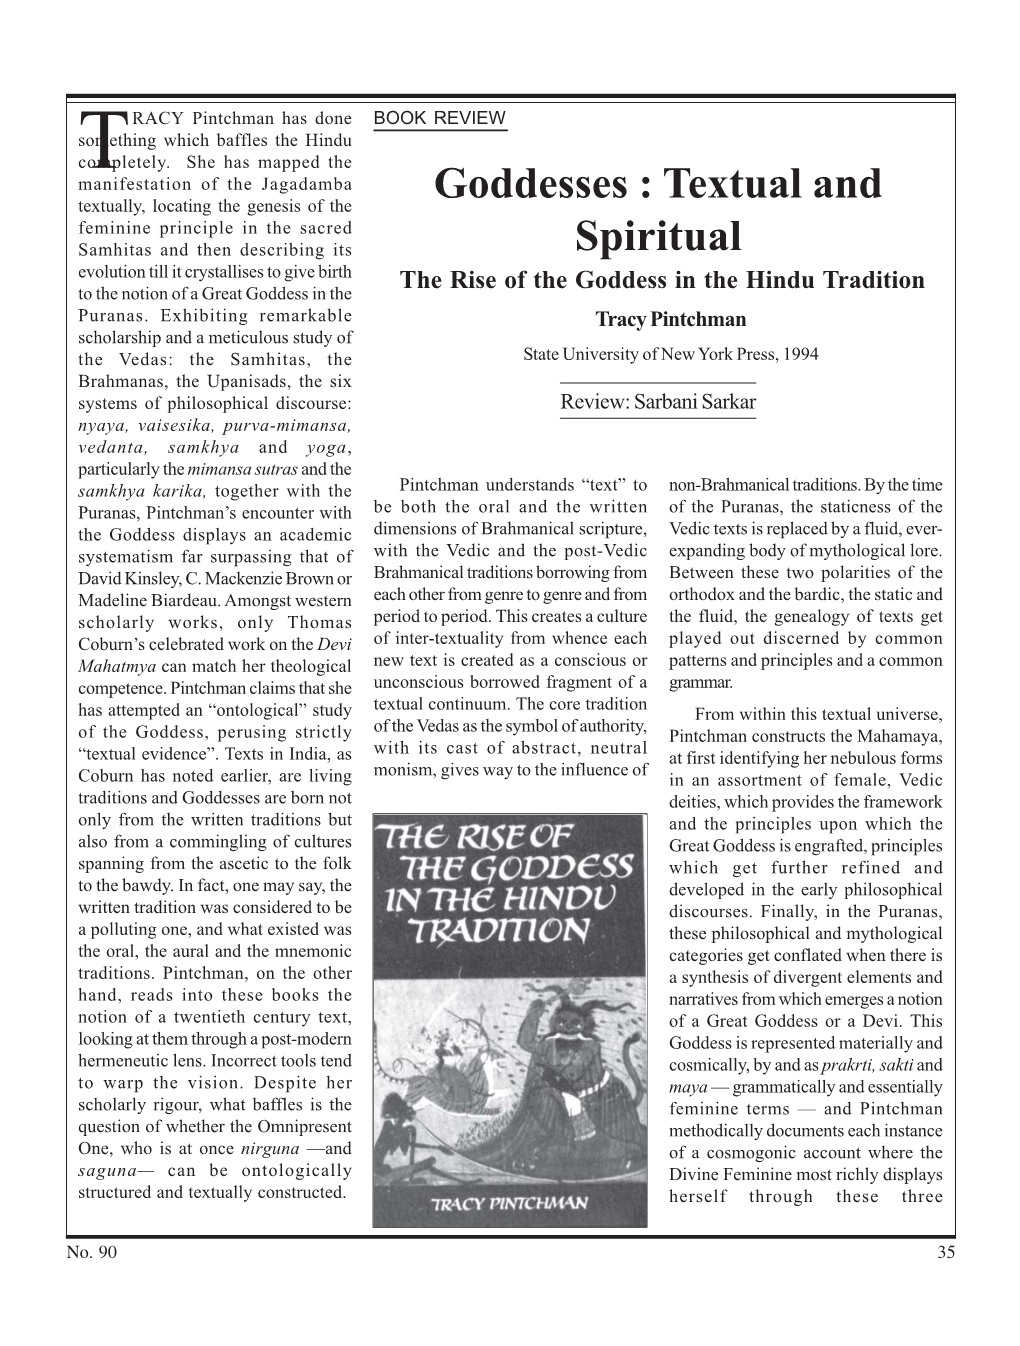 Goddesses: Textual and Spiritual